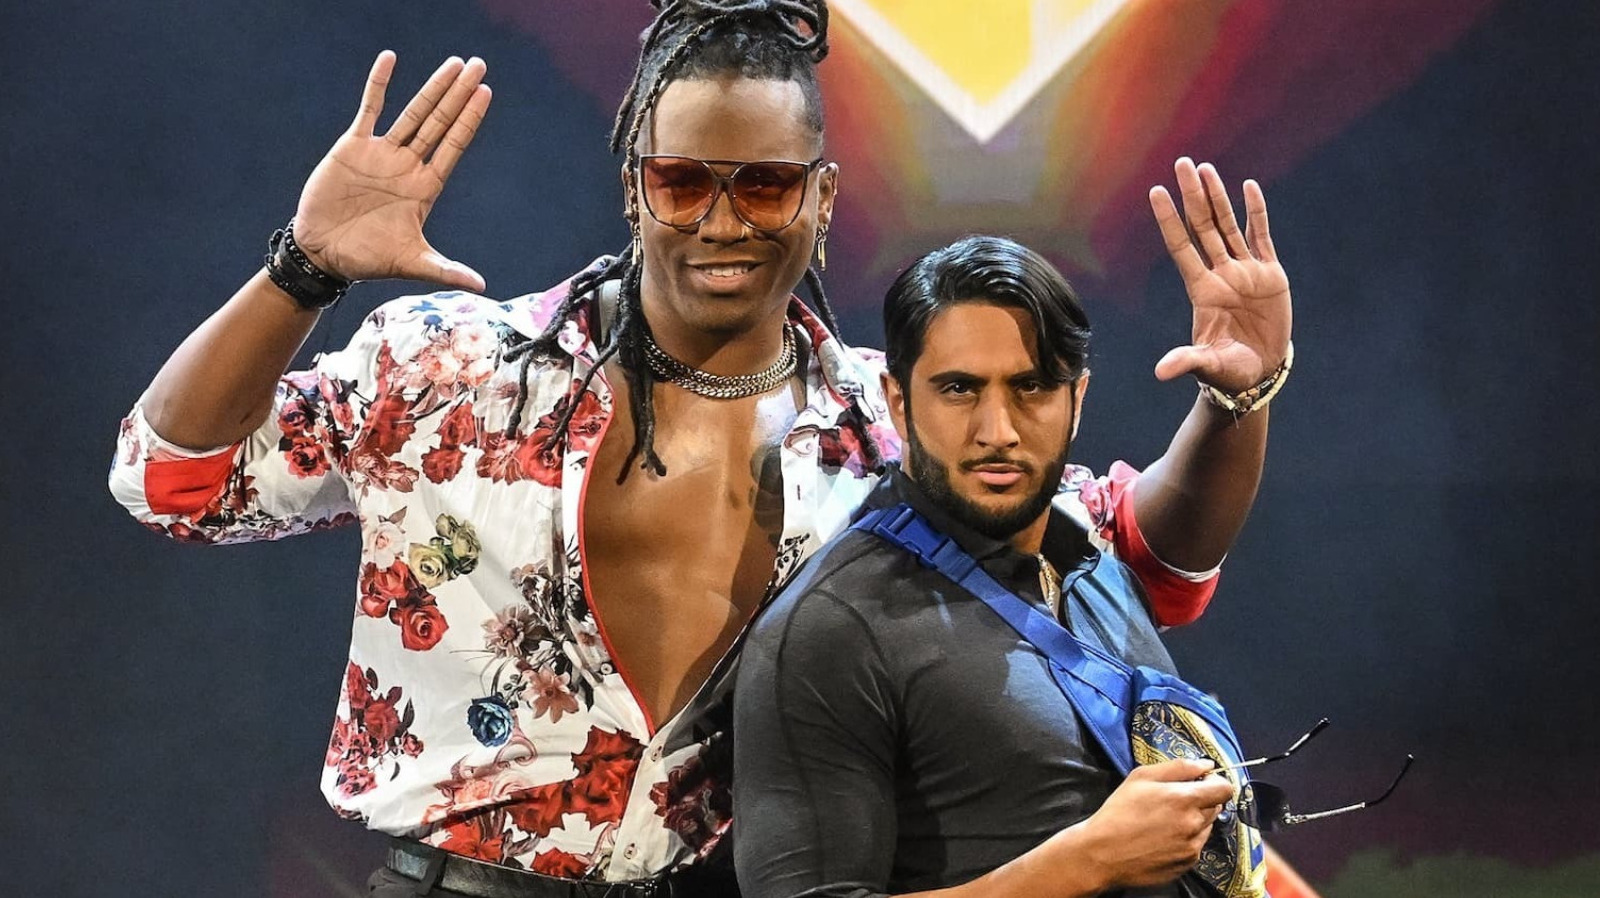 Las ex estrellas de la WWE Mace y Mansoor anunciadas para un importante programa independiente luego de su lanzamiento